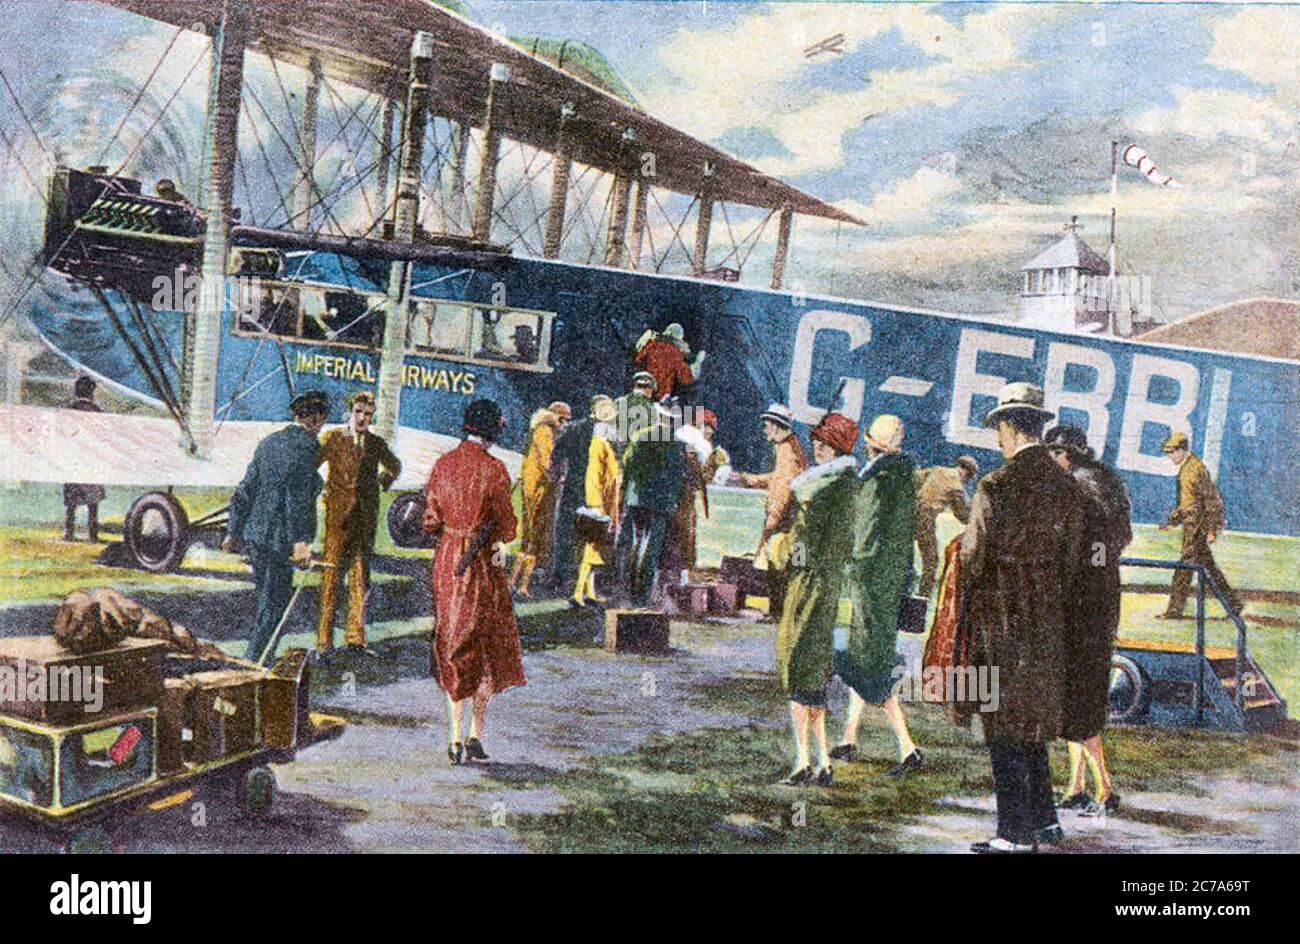 PASSEGGERI DELLA IMPERIAL AIRWAYS che salpano a bordo di una Handley Page W.8b chiamata 'Prince Henry' all'aeroporto di Croydon circa 1930. Foto Stock